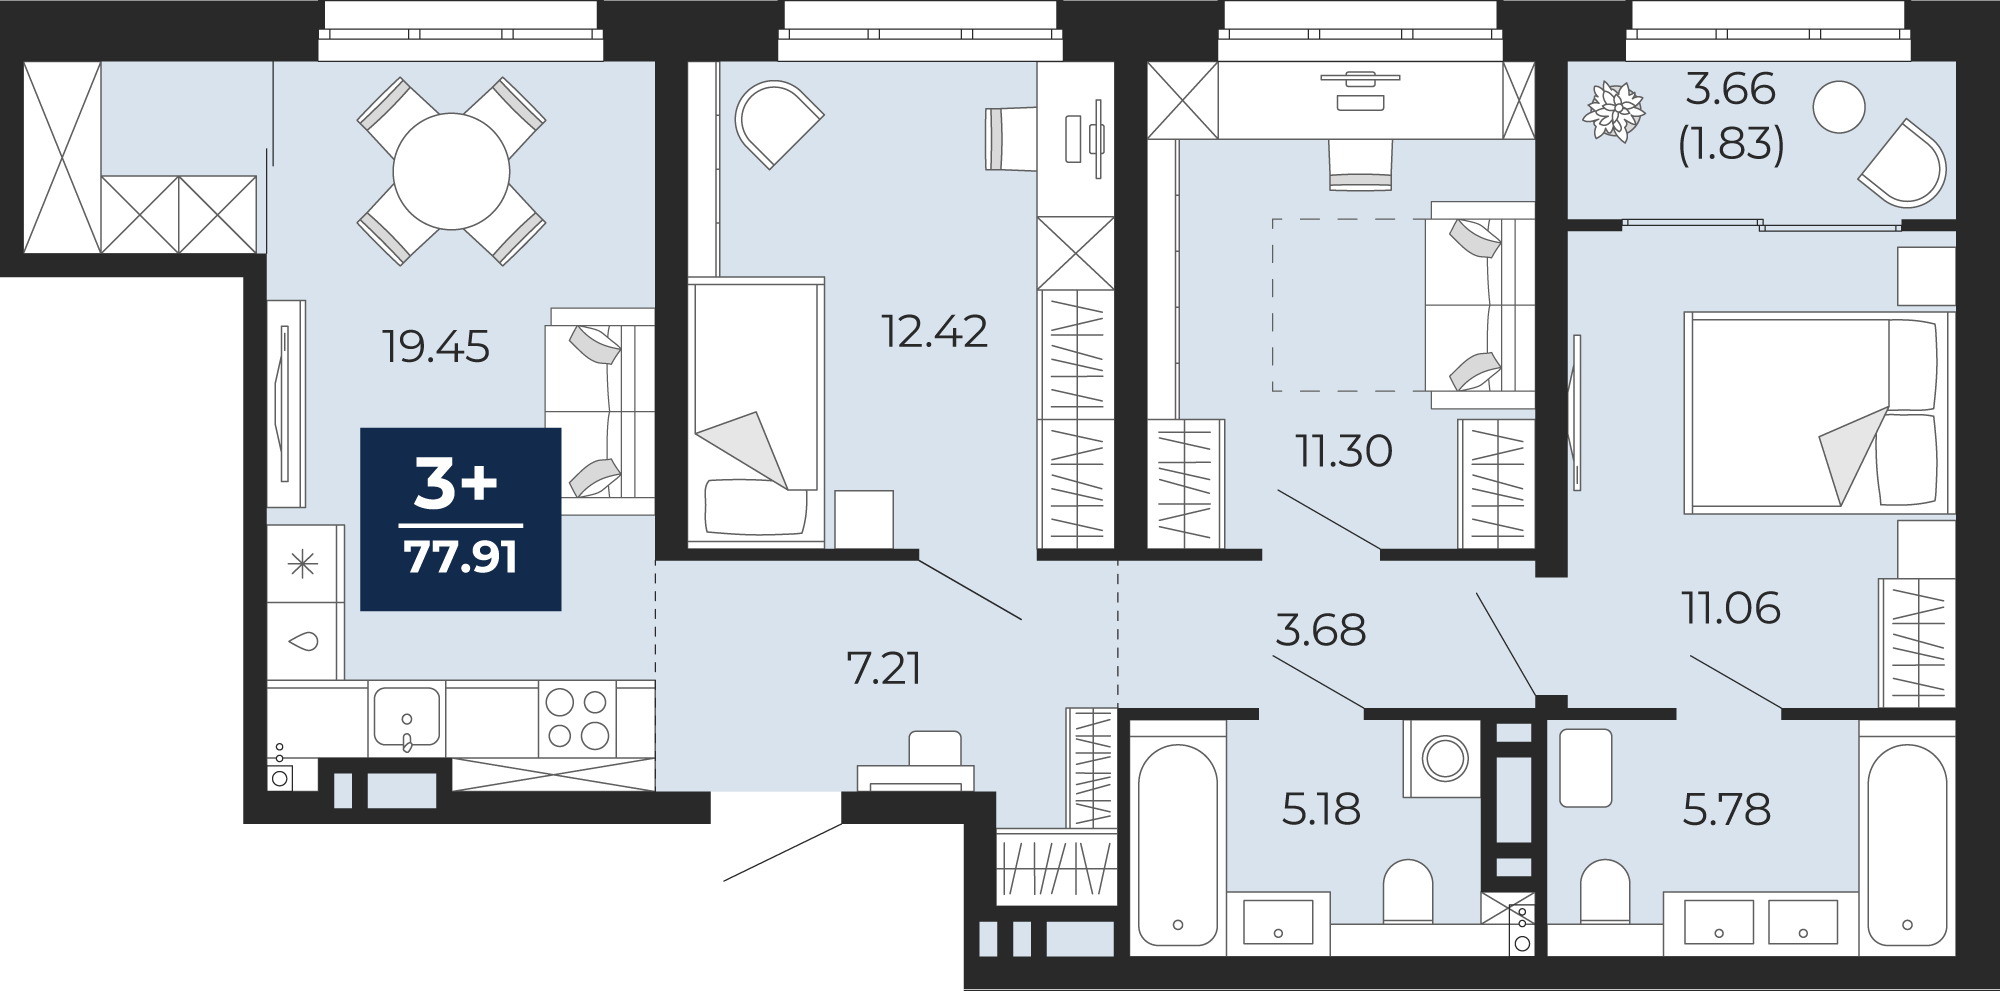 Квартира № 172, 3-комнатная, 77.91 кв. м, 5 этаж